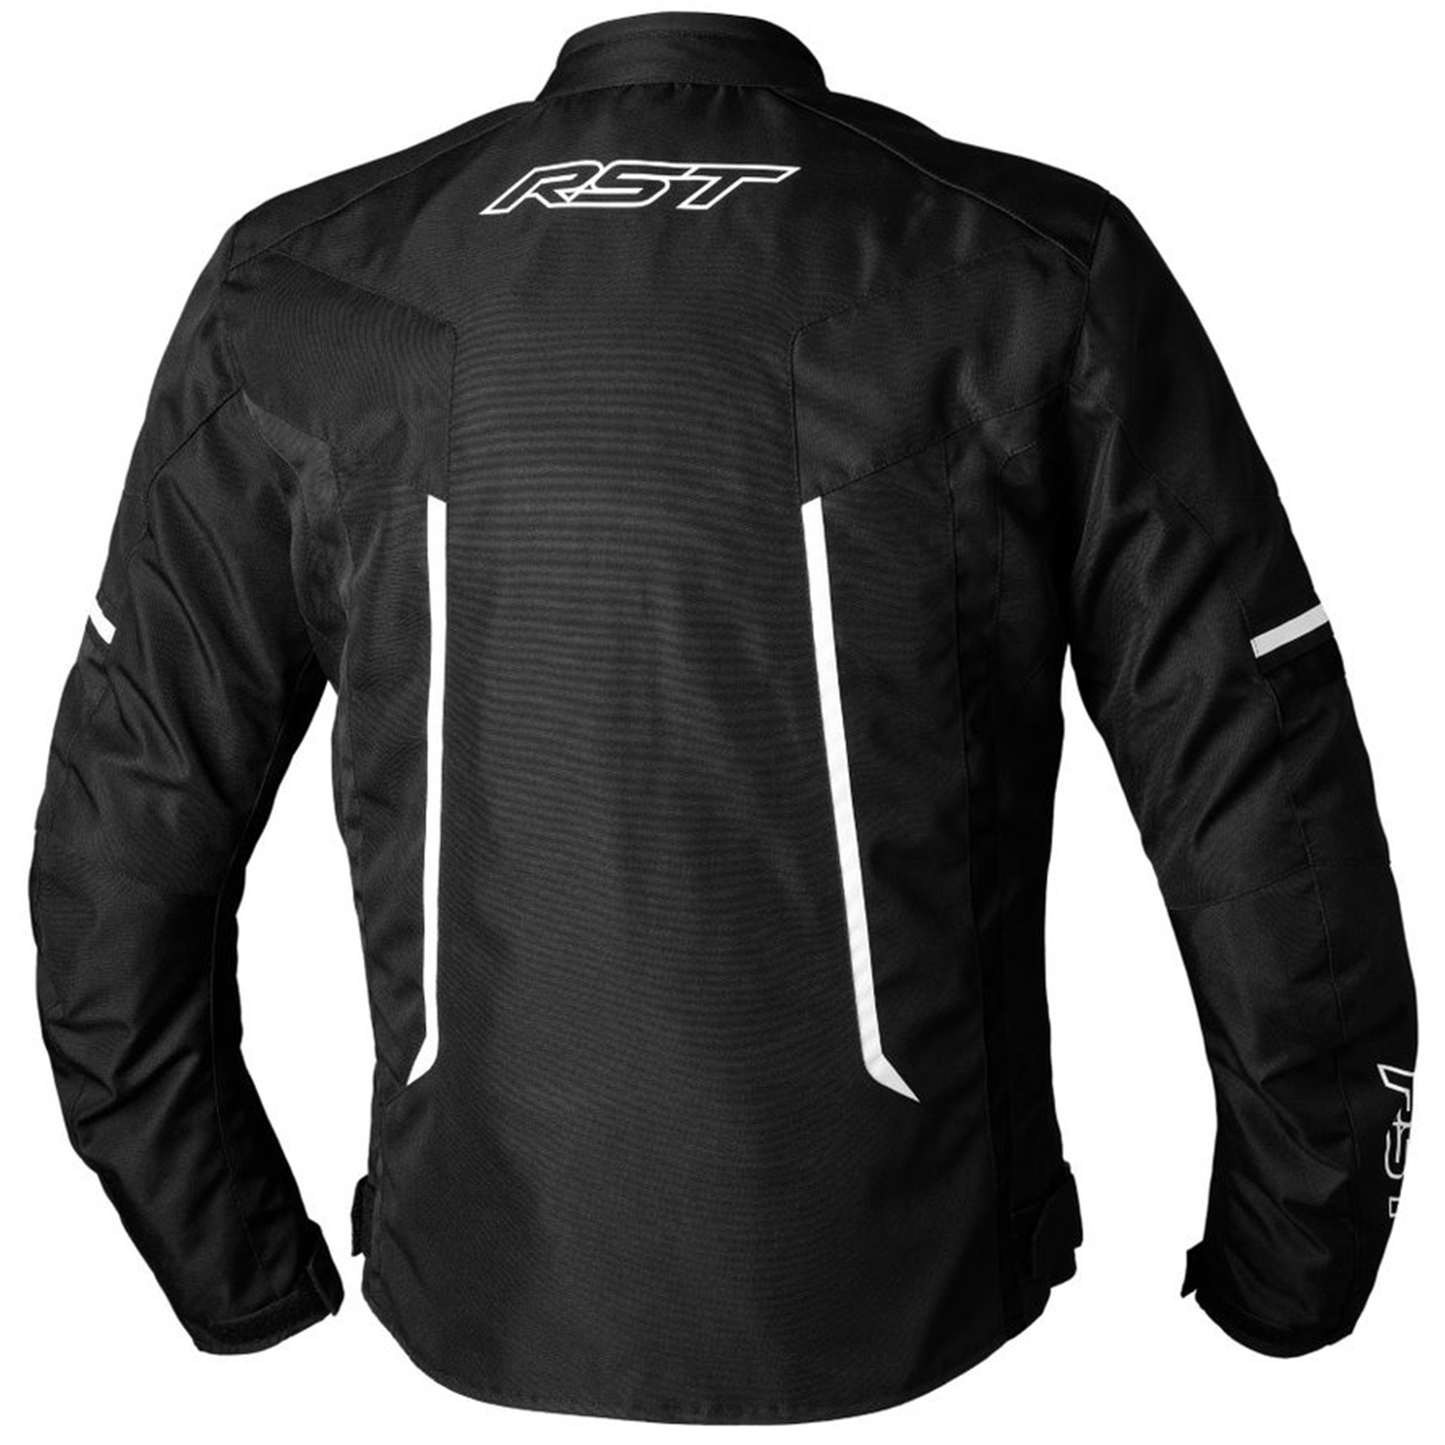 RST Pilot Evo (CE) Men's Textile Jacket - Black/Black/White